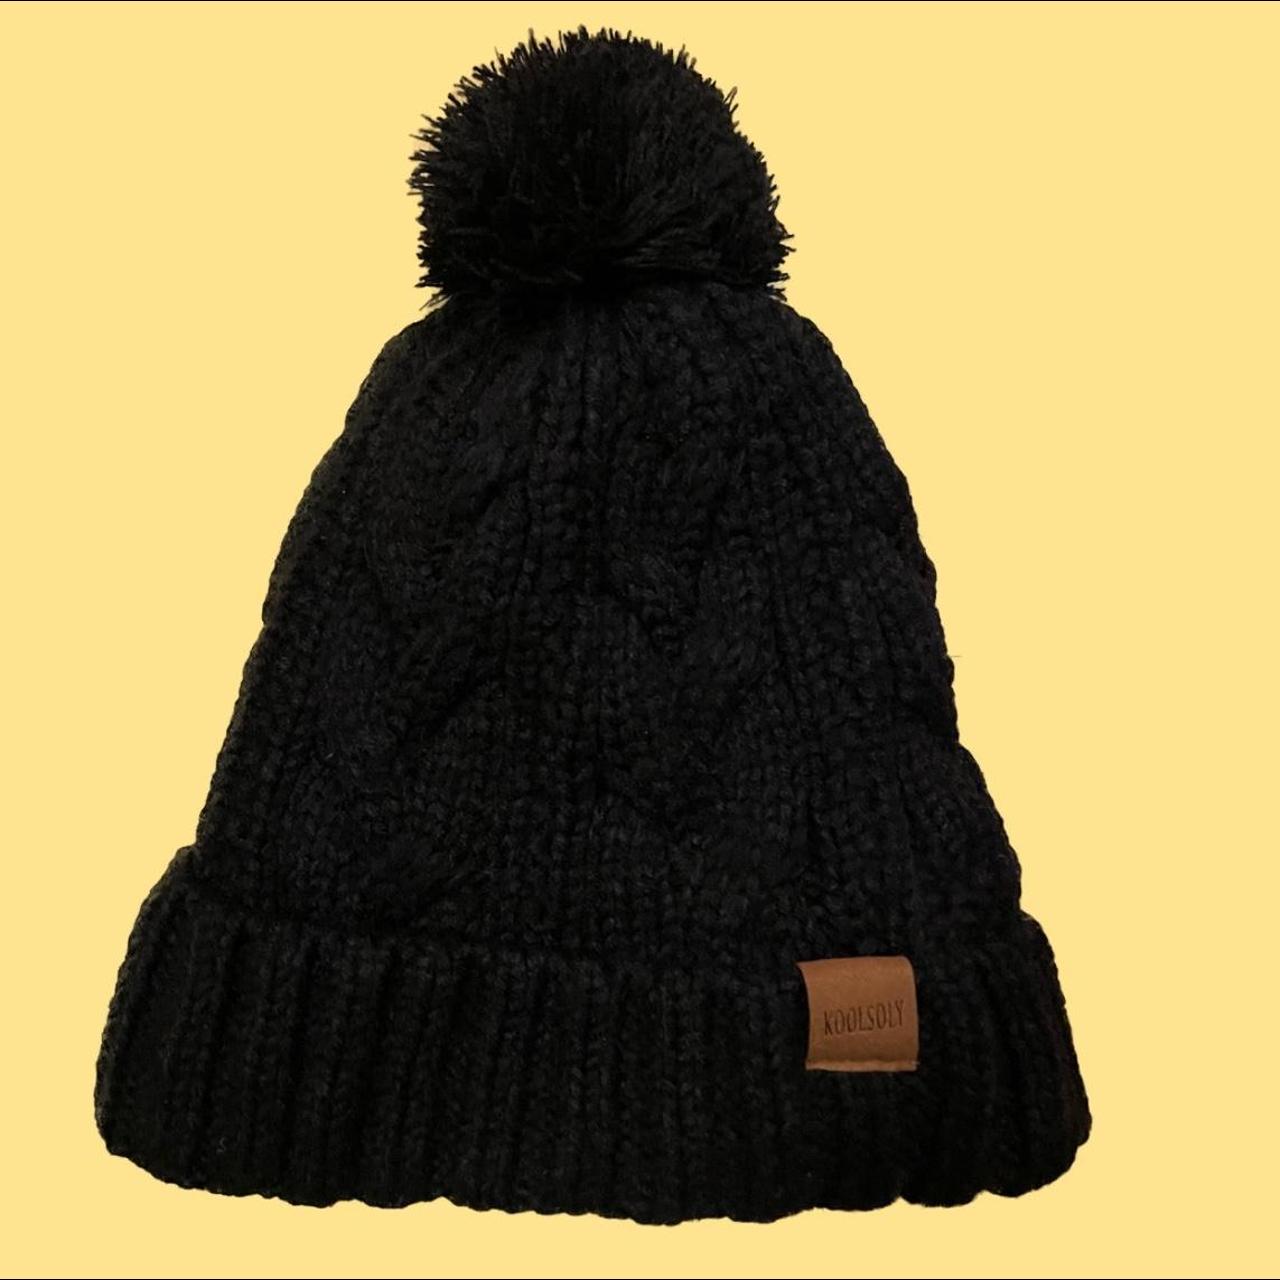 black knit pom pom beanie •never worn •super warm - Depop